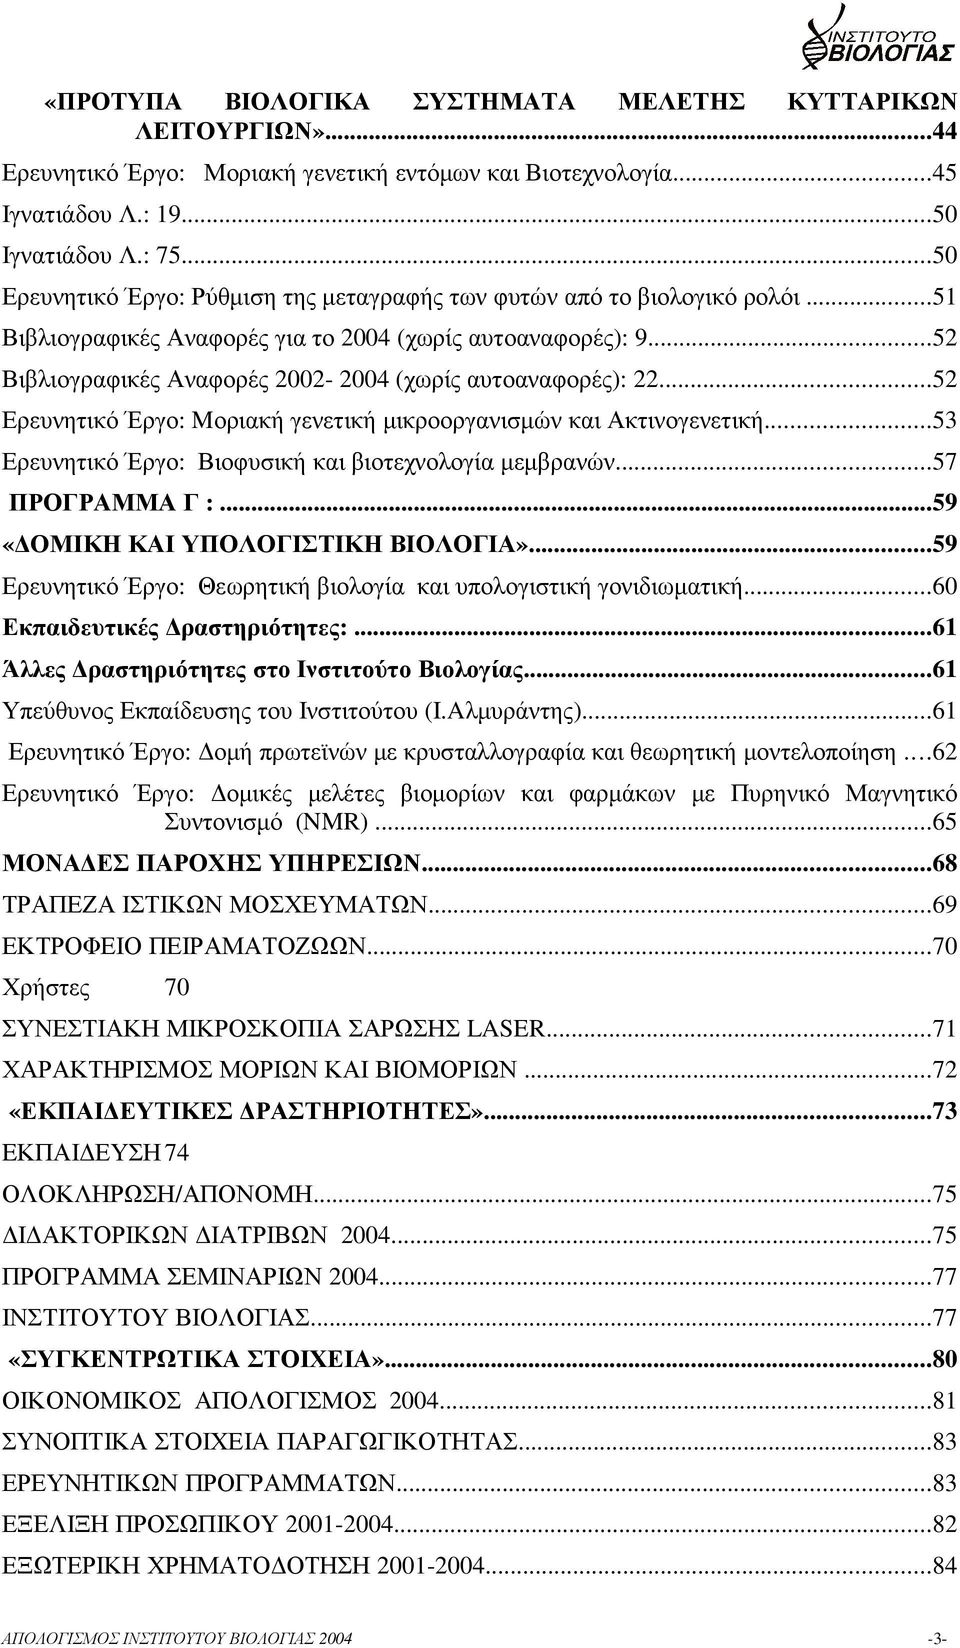 ..52 Βιβλιογραφικές Αναφορές 2002-2004 (χωρίς αυτοαναφορές): 22...52 Ερευνητικό Έργο: Mοριακή γενετική µικροοργανισµών και Ακτινογενετική...53 Ερευνητικό Έργο: Βιοφυσική και βιοτεχνολογία µεµβρανών.